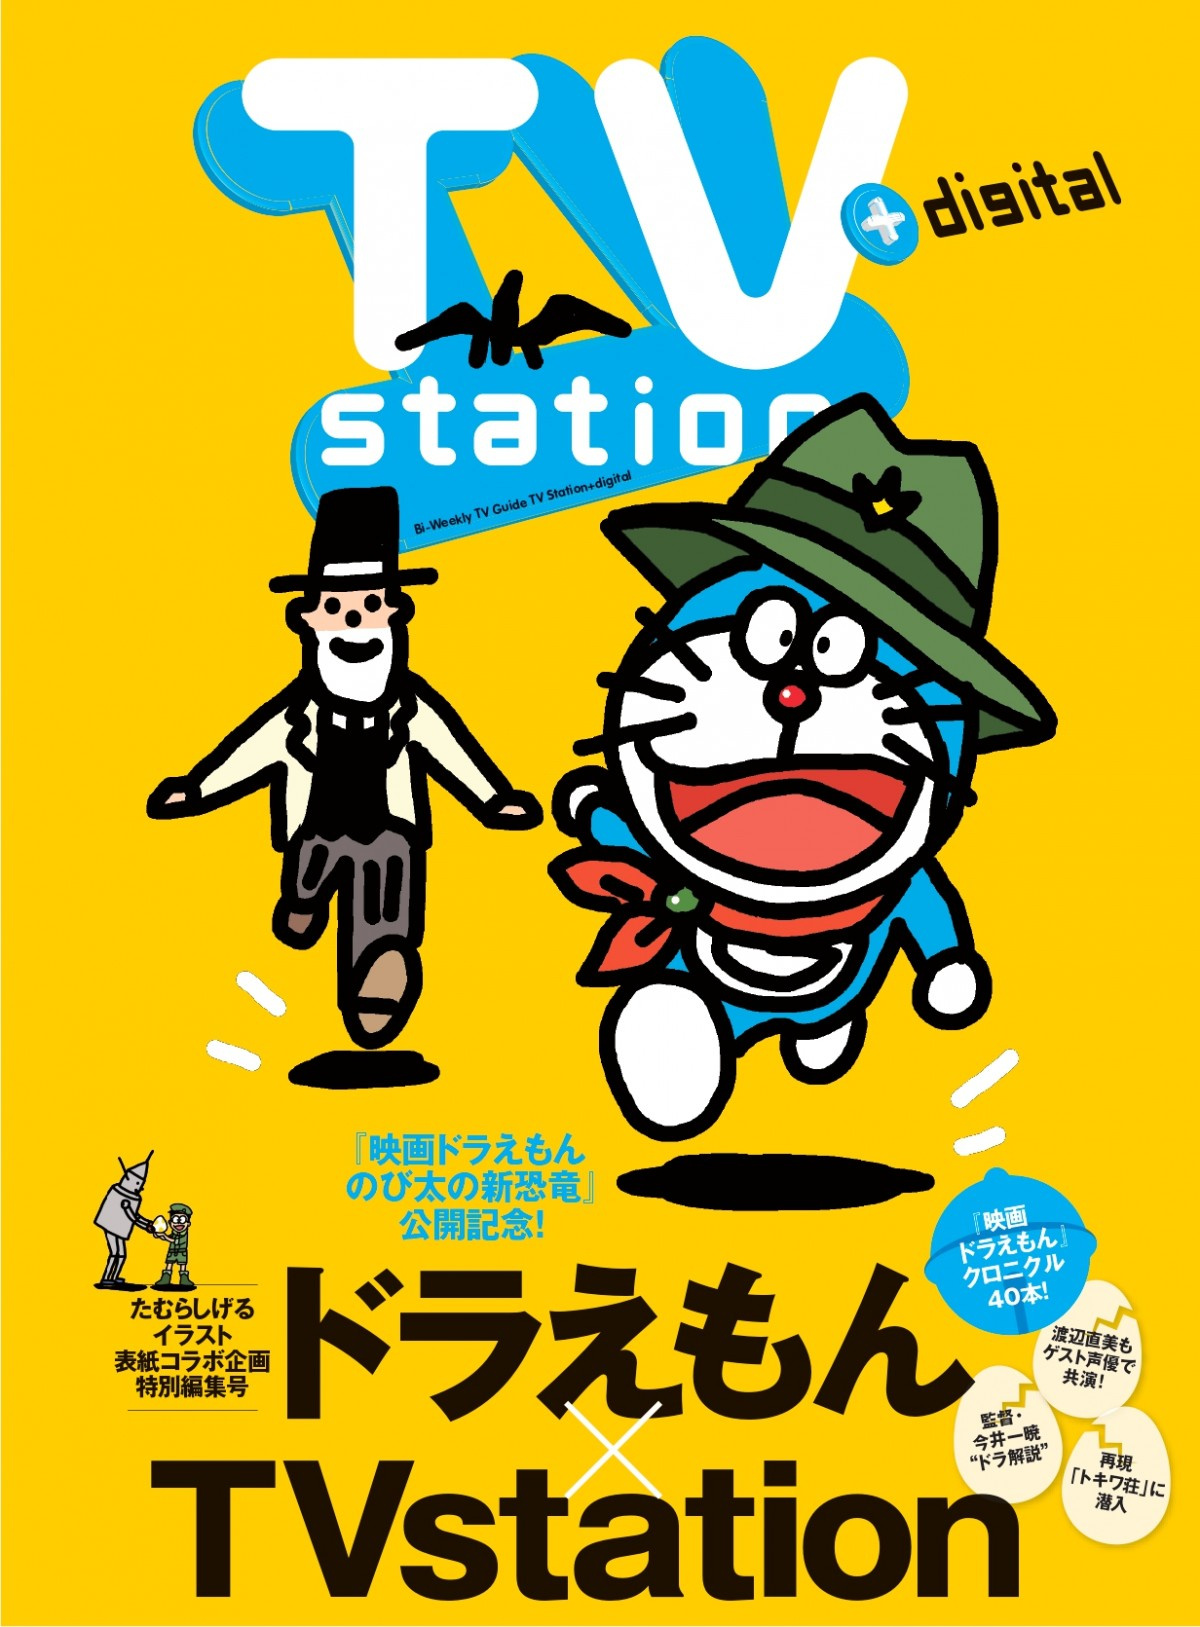 ドラえもん Tvstation 初表紙 ガンダム Onepiece に続き3回目のアニメコラボ Oricon News